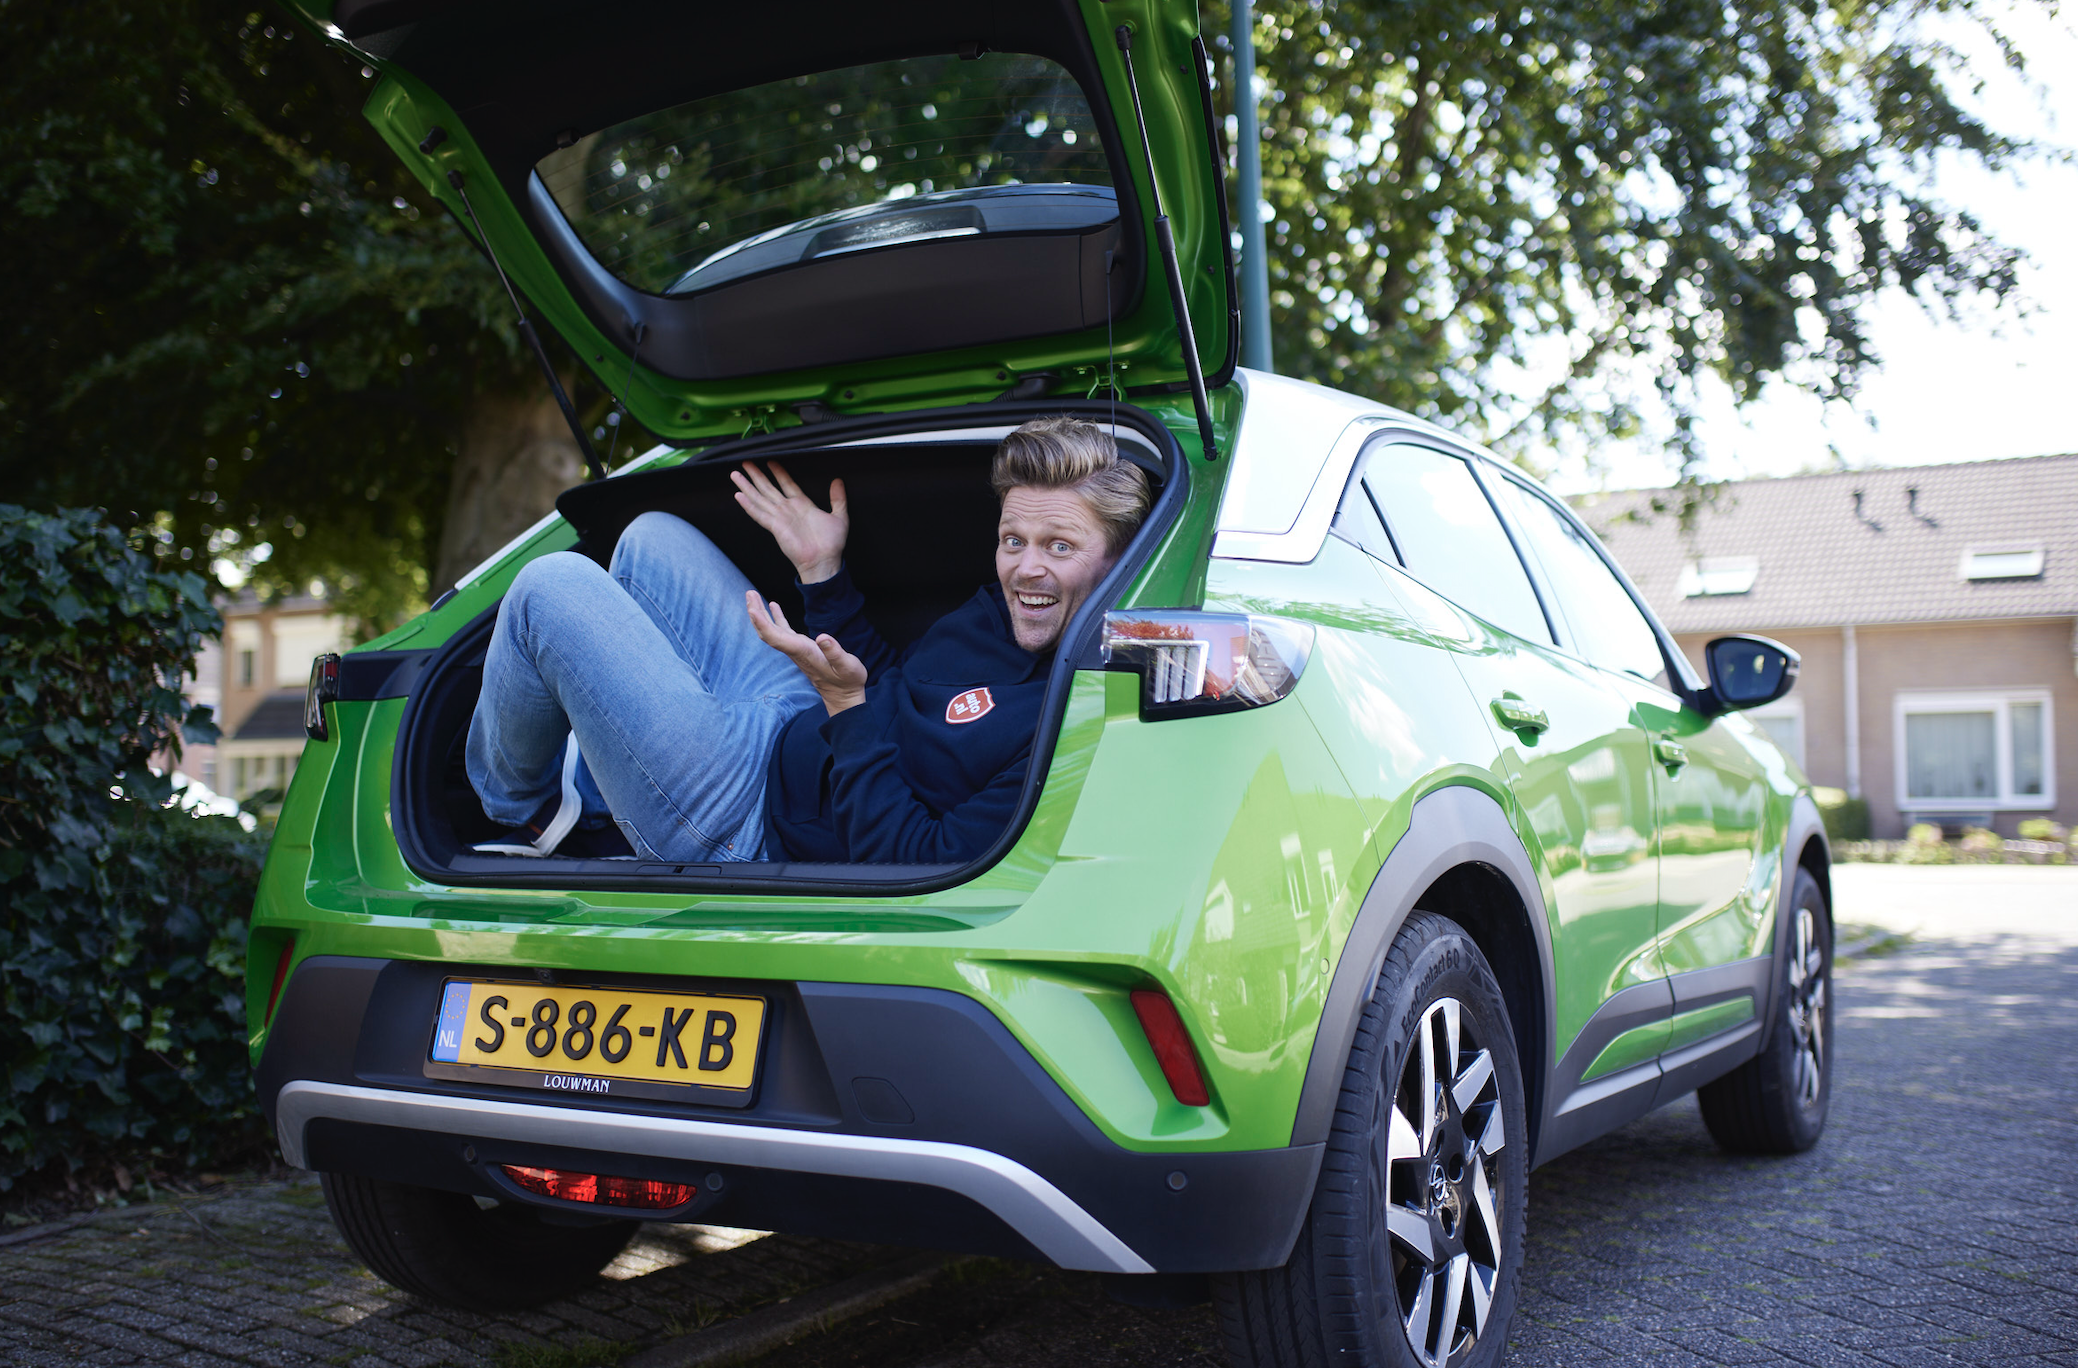 Alleen maar 'blije blikken' in nieuwe merkcampagne van auto.nl